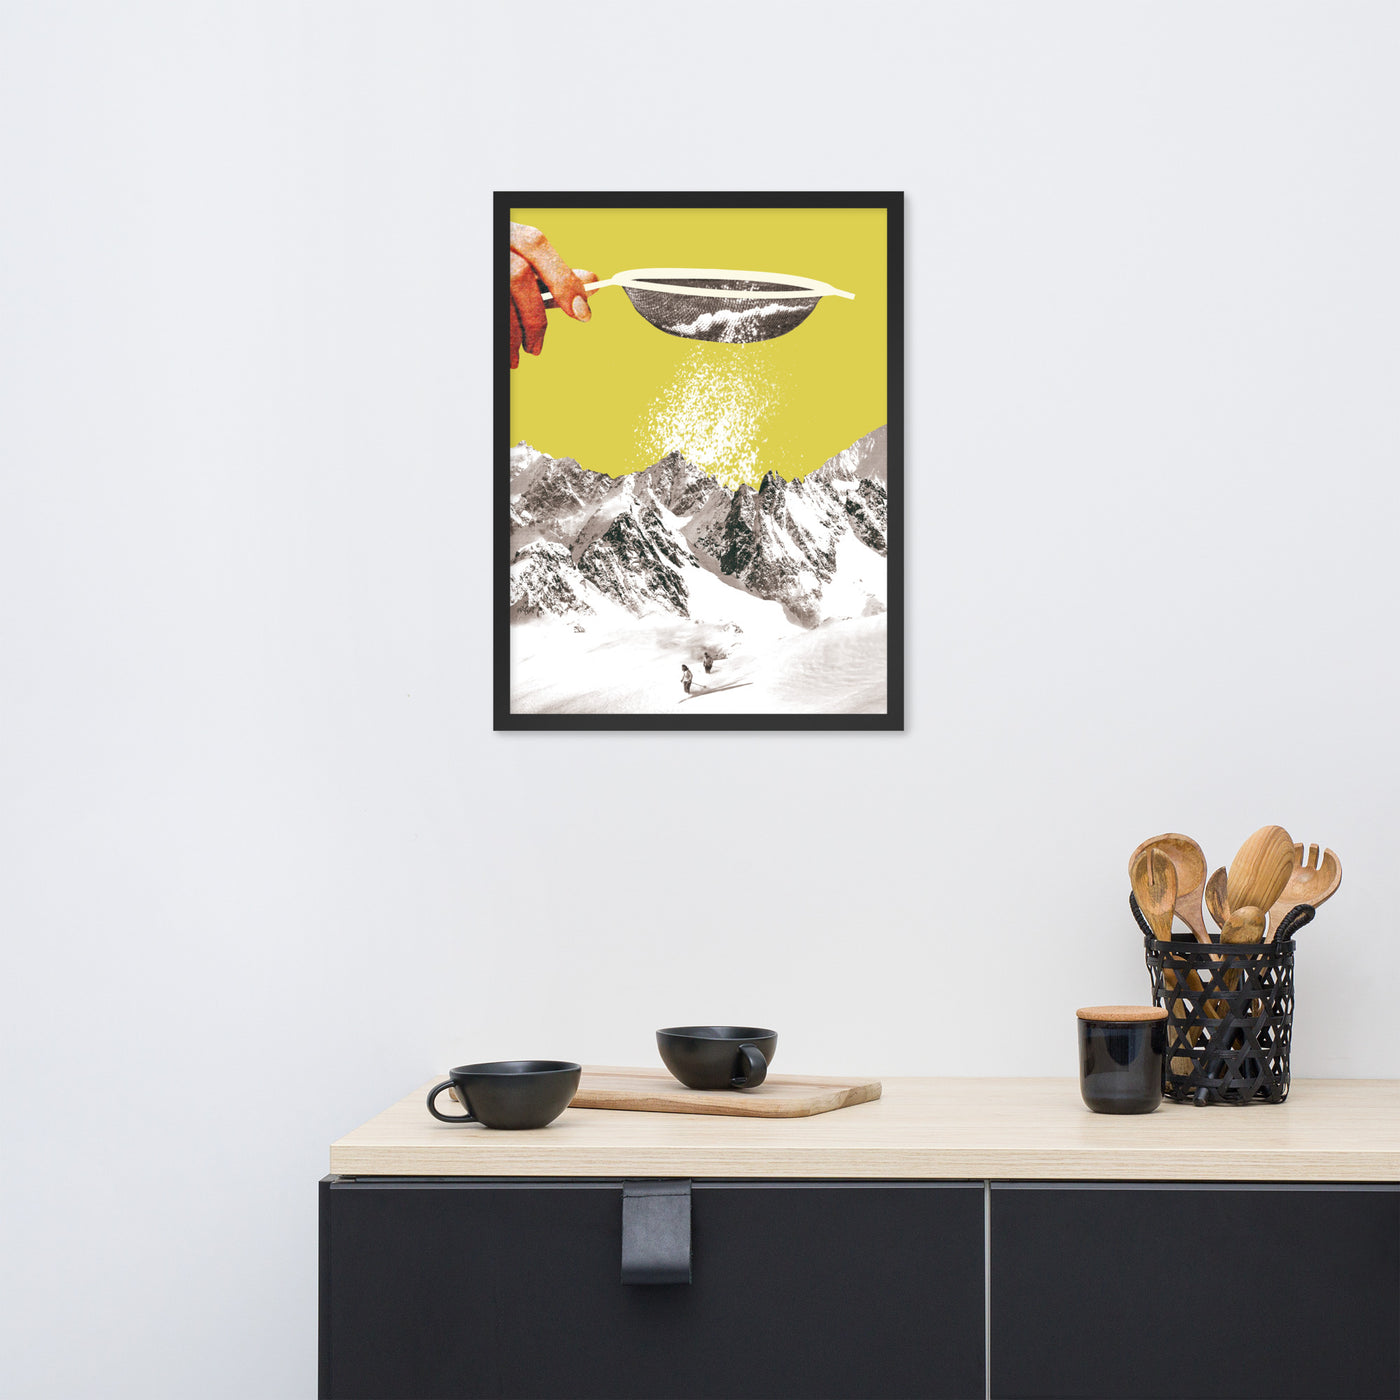 Gerahmtes Bild Kollektion "Kitchen Art" - Ski und Berge